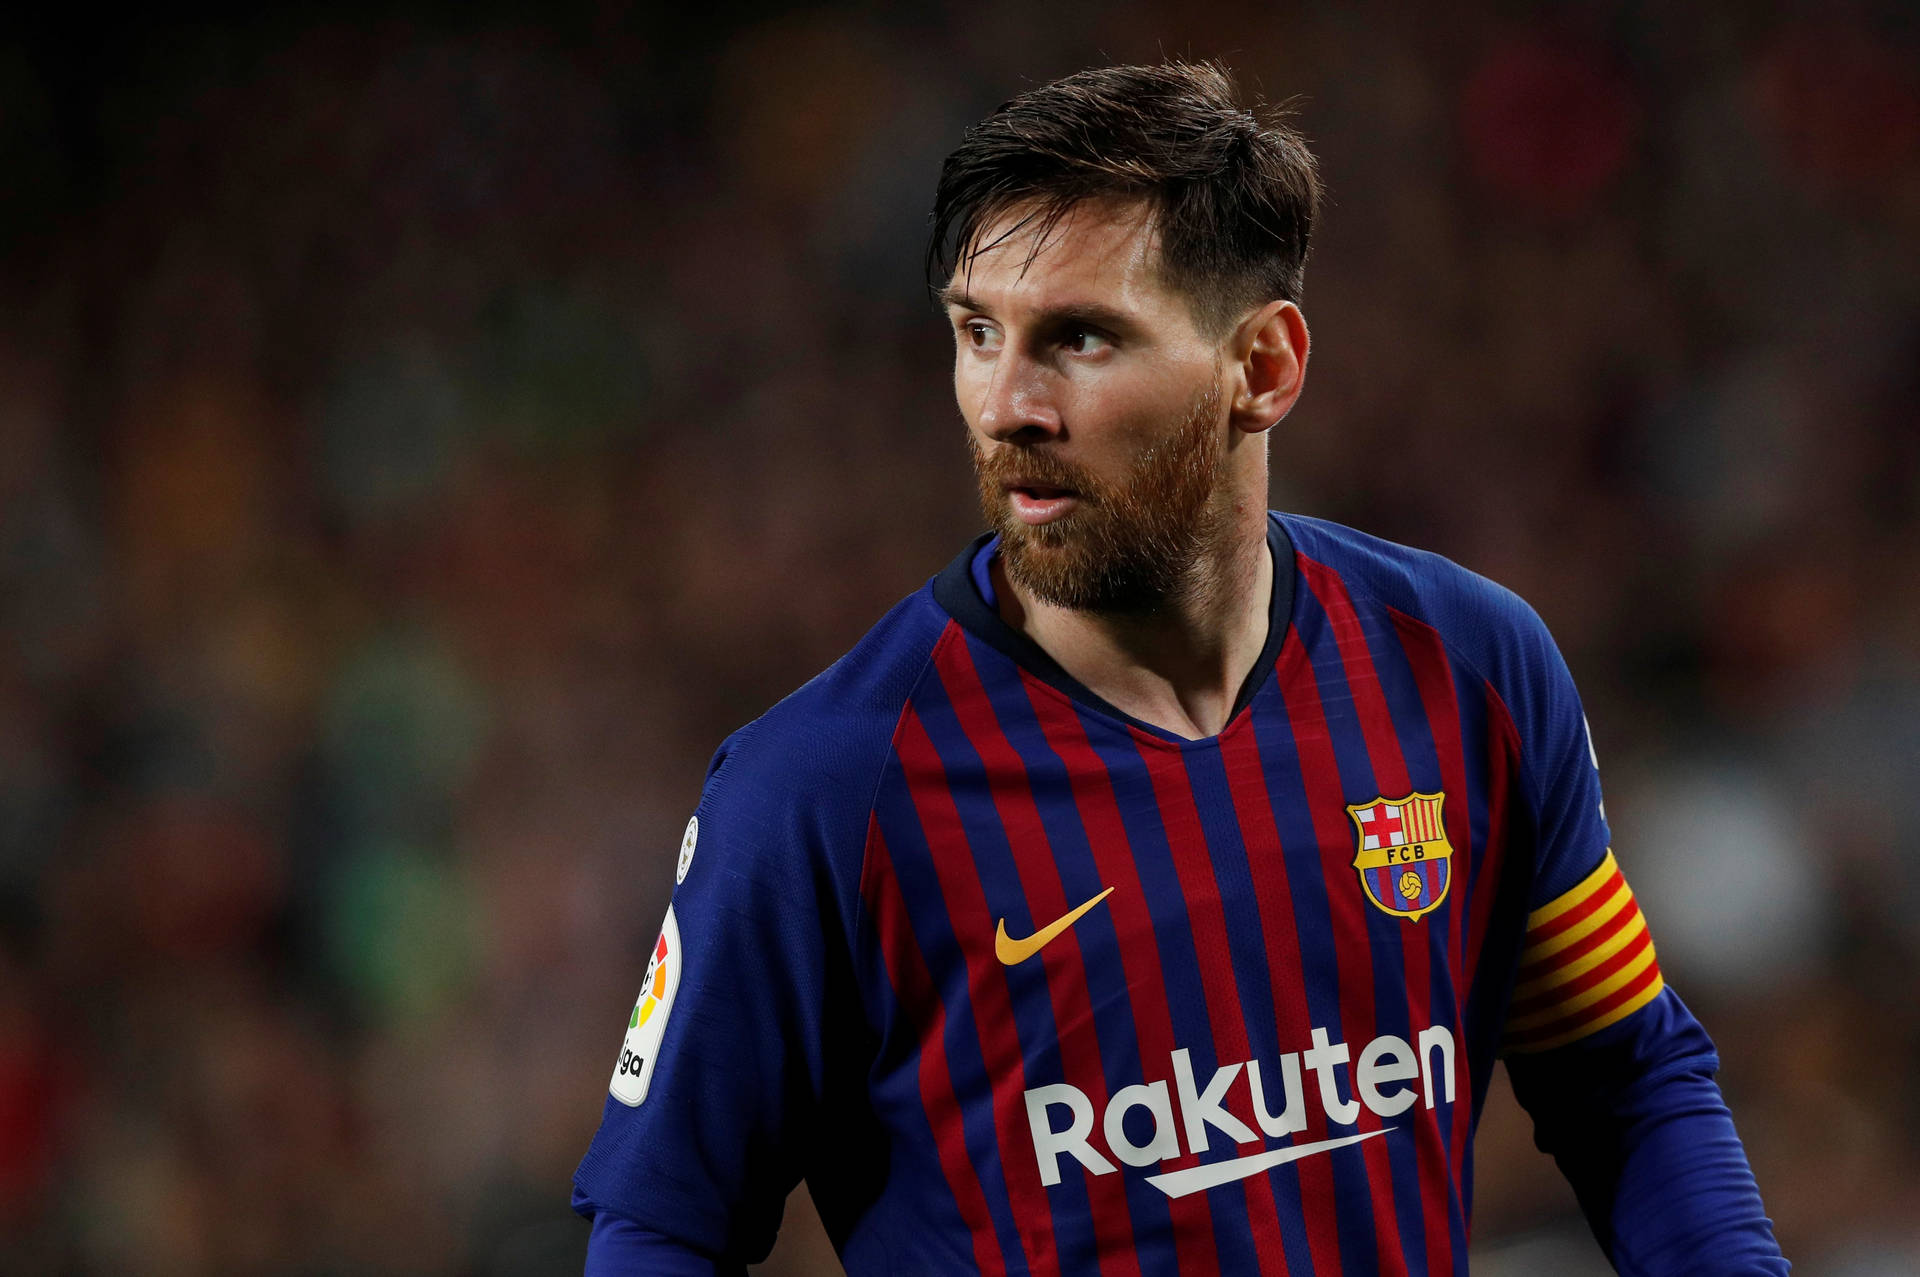 Messi 2020 Barcelona Rakuten Jersey Background